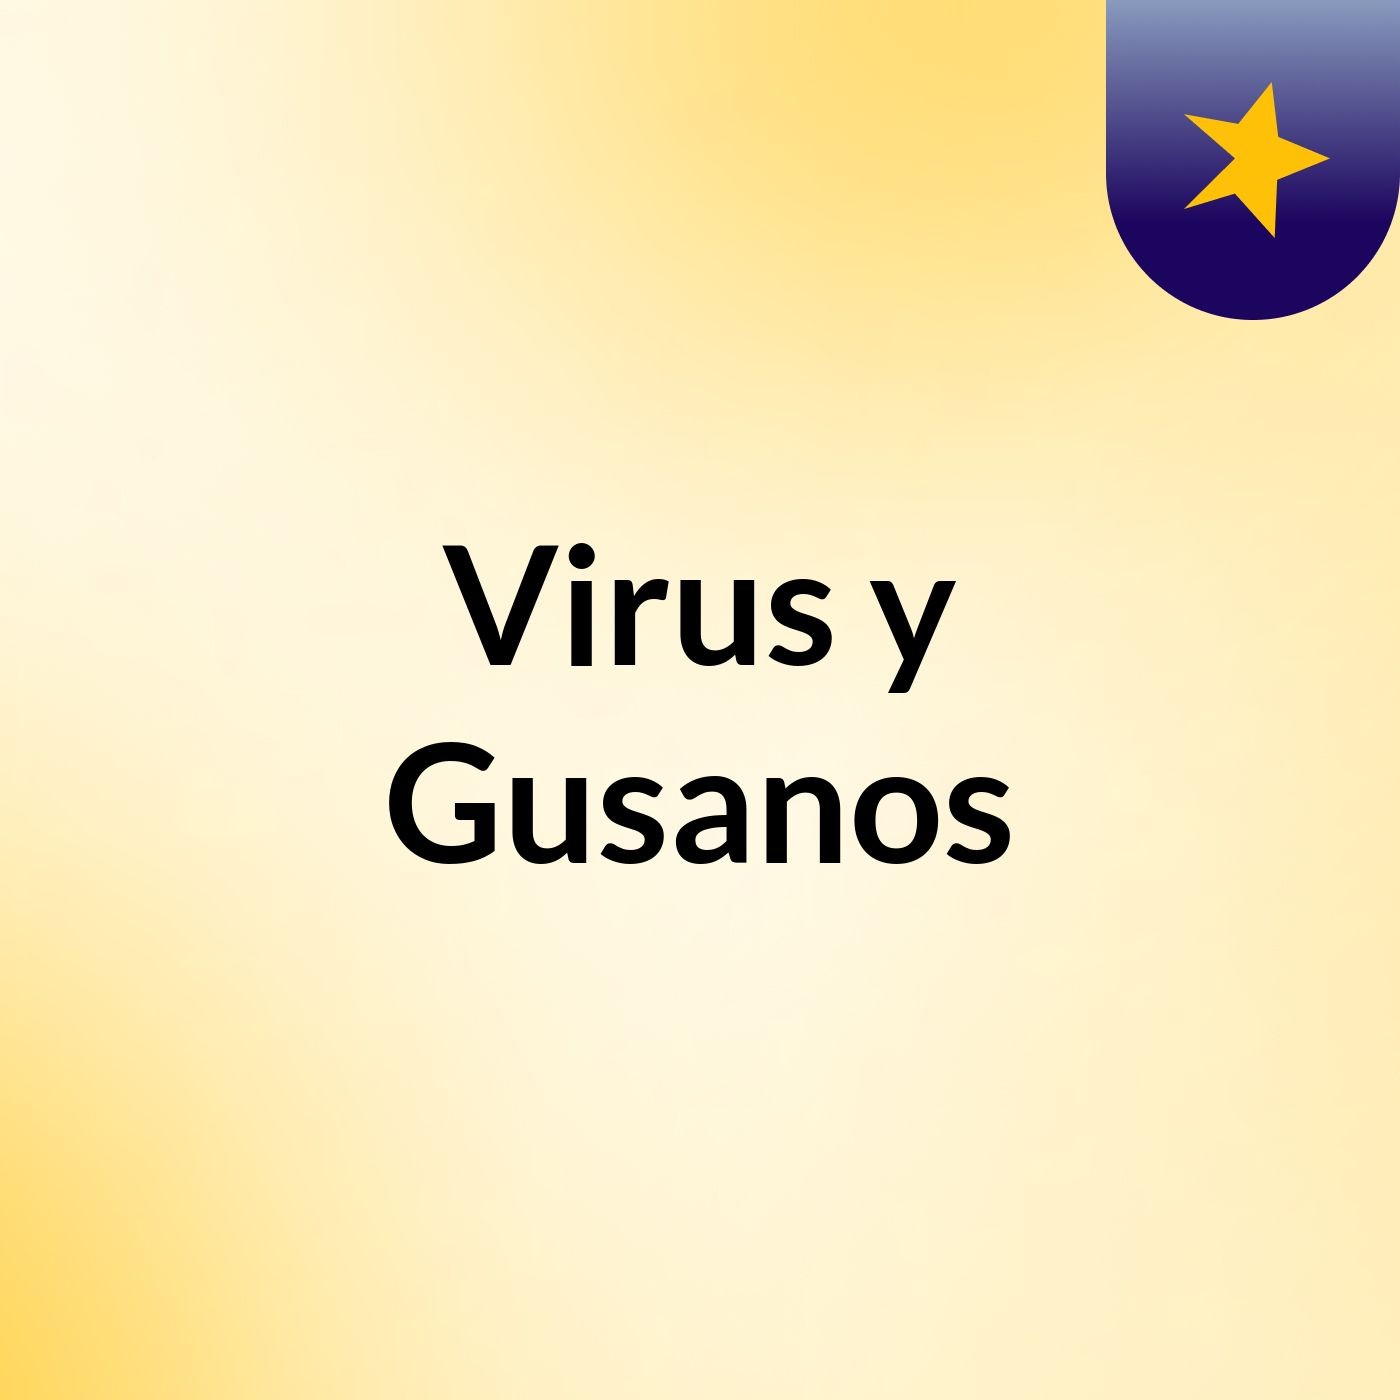 Virus y Gusanos